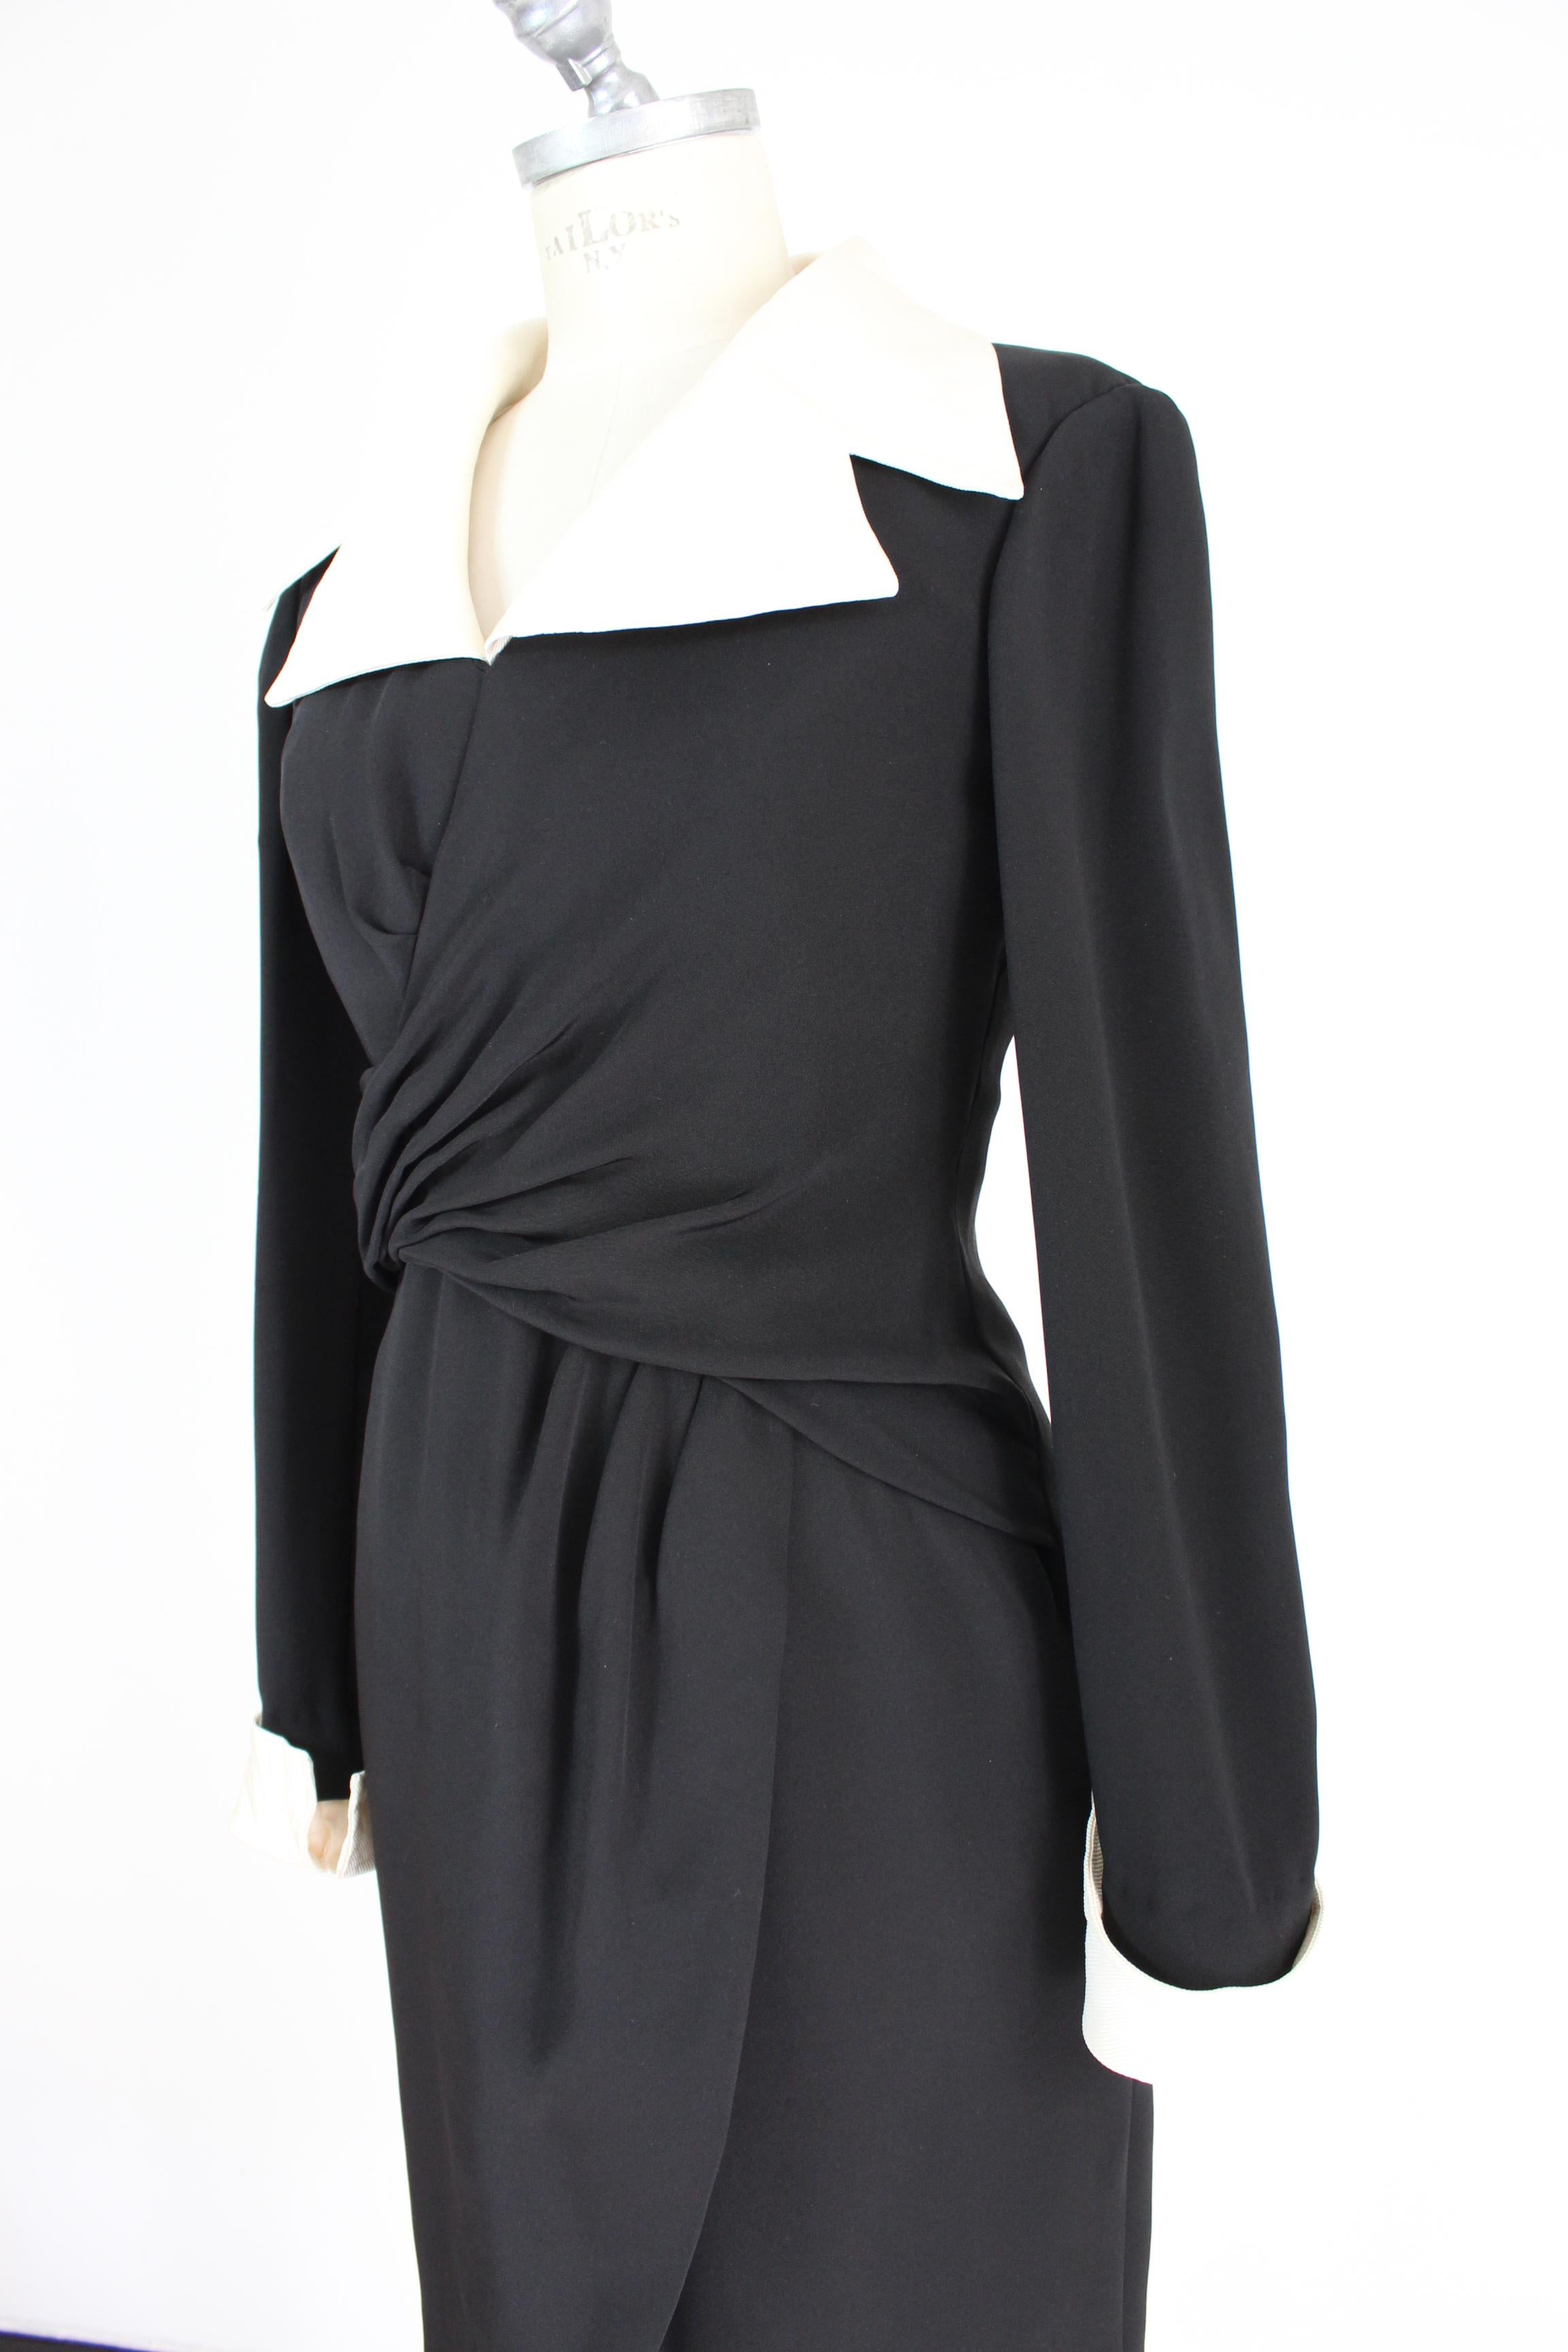 Women's Louis Feraud Black Beige Silk Sheath Dress